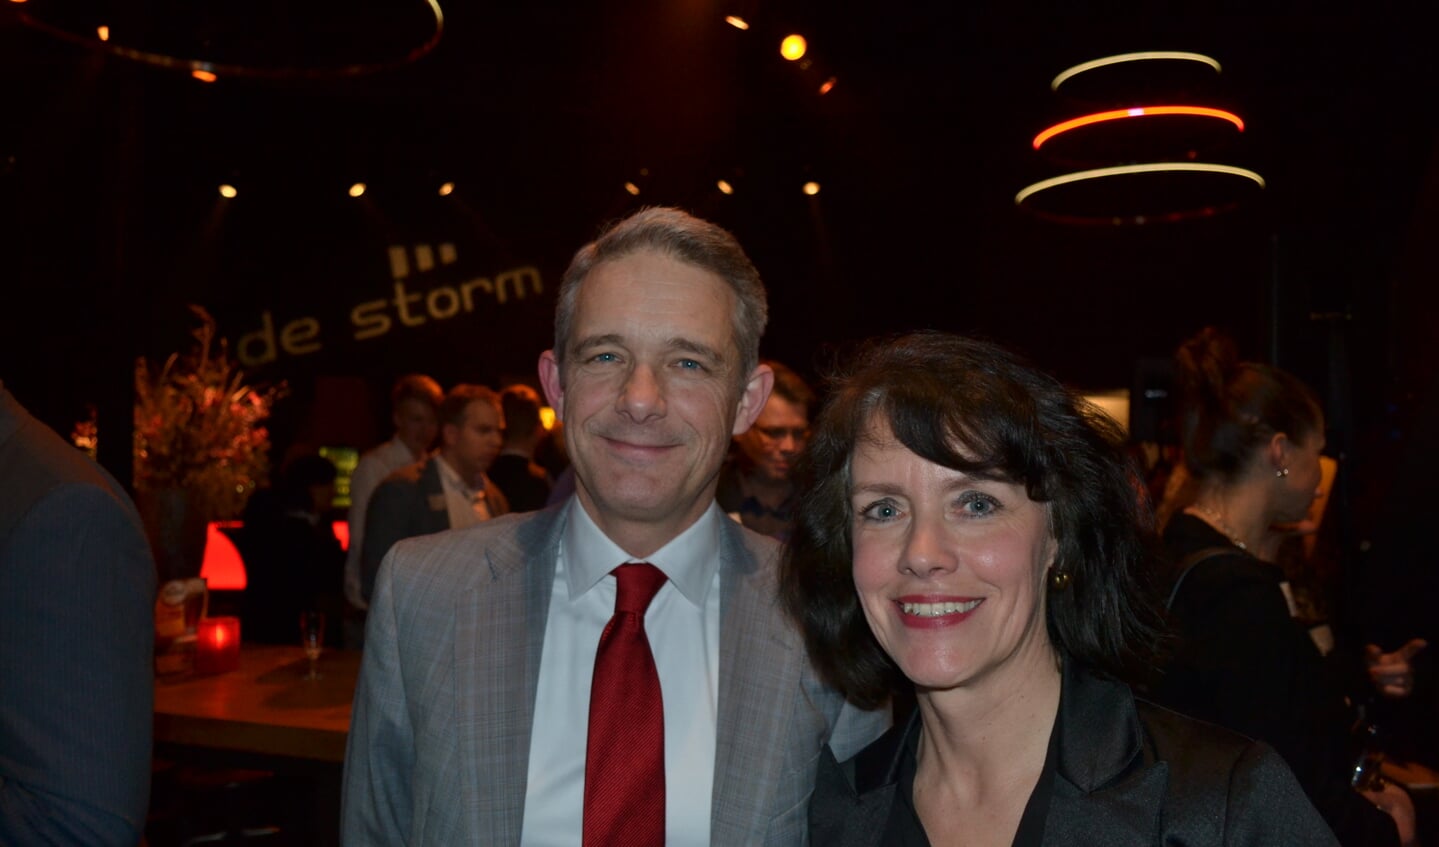 VNO-NCW-voorzitter Peter Rikken en regiomanager Wilma Elbertsen tijdens de netwerkborrel in De Storm. Foto: Leander Grooten